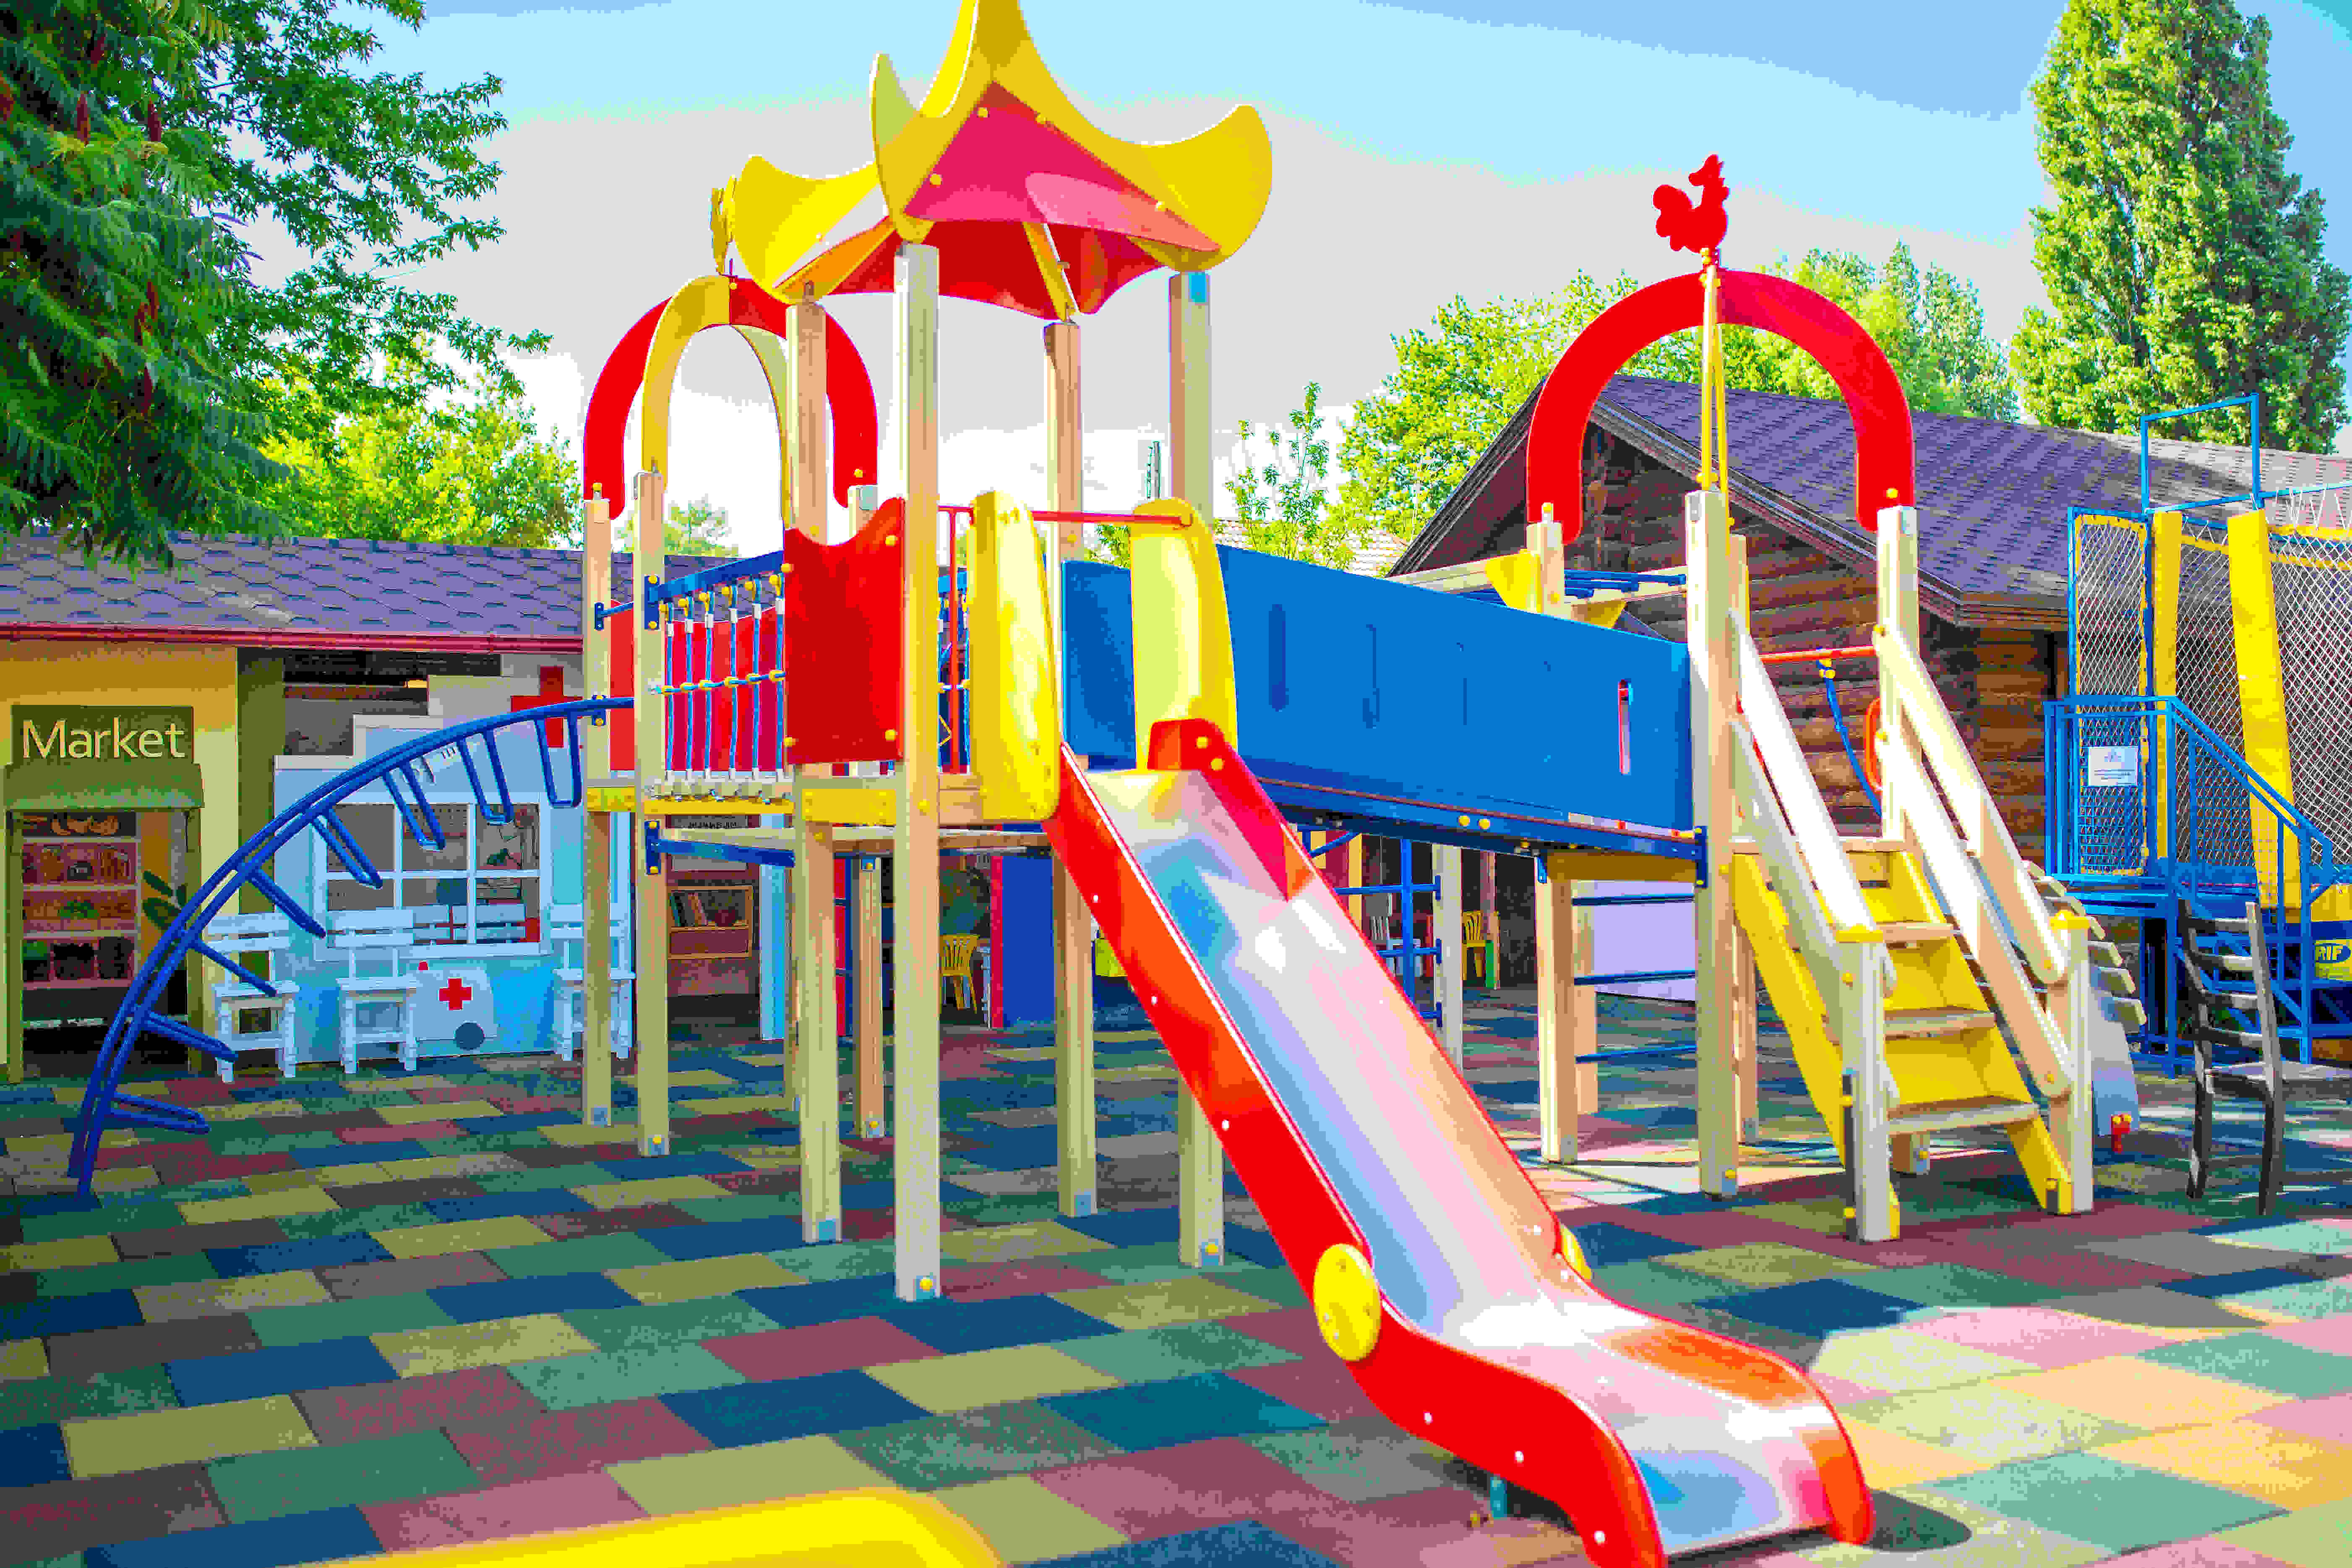 Детская площадка своими руками: фото и идеи для строительства игровой зоны | HANDMADE | Дзен